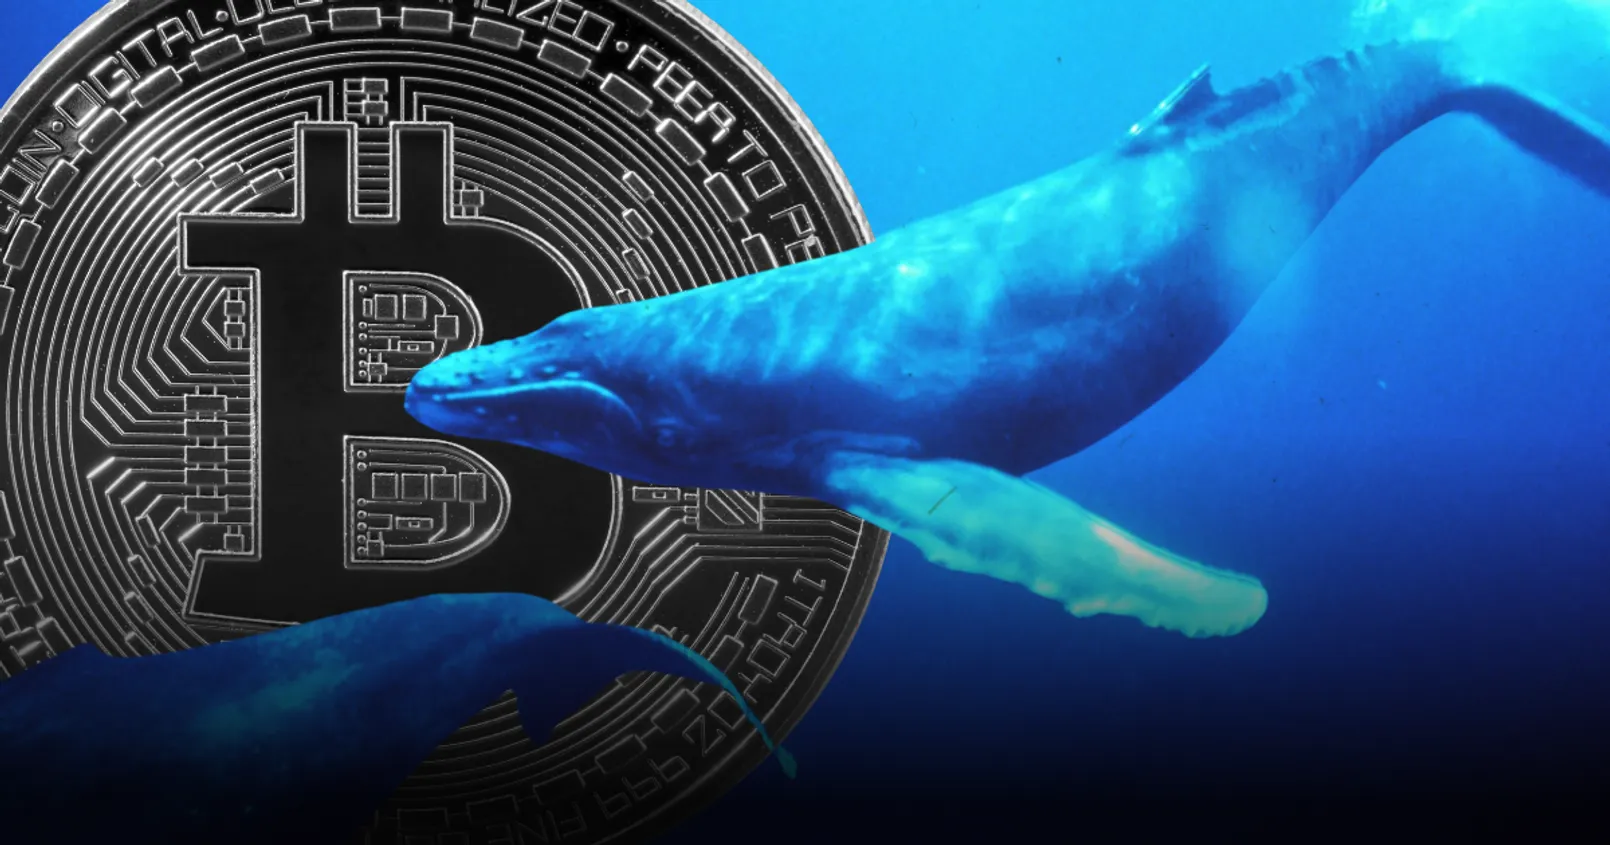 พบ 'วาฬ' ตัวหนึ่งเข้าช้อน Bitcoin นับตั้งแต่ที่ราคาเหรียญ ลดลงจากระดับ ATH